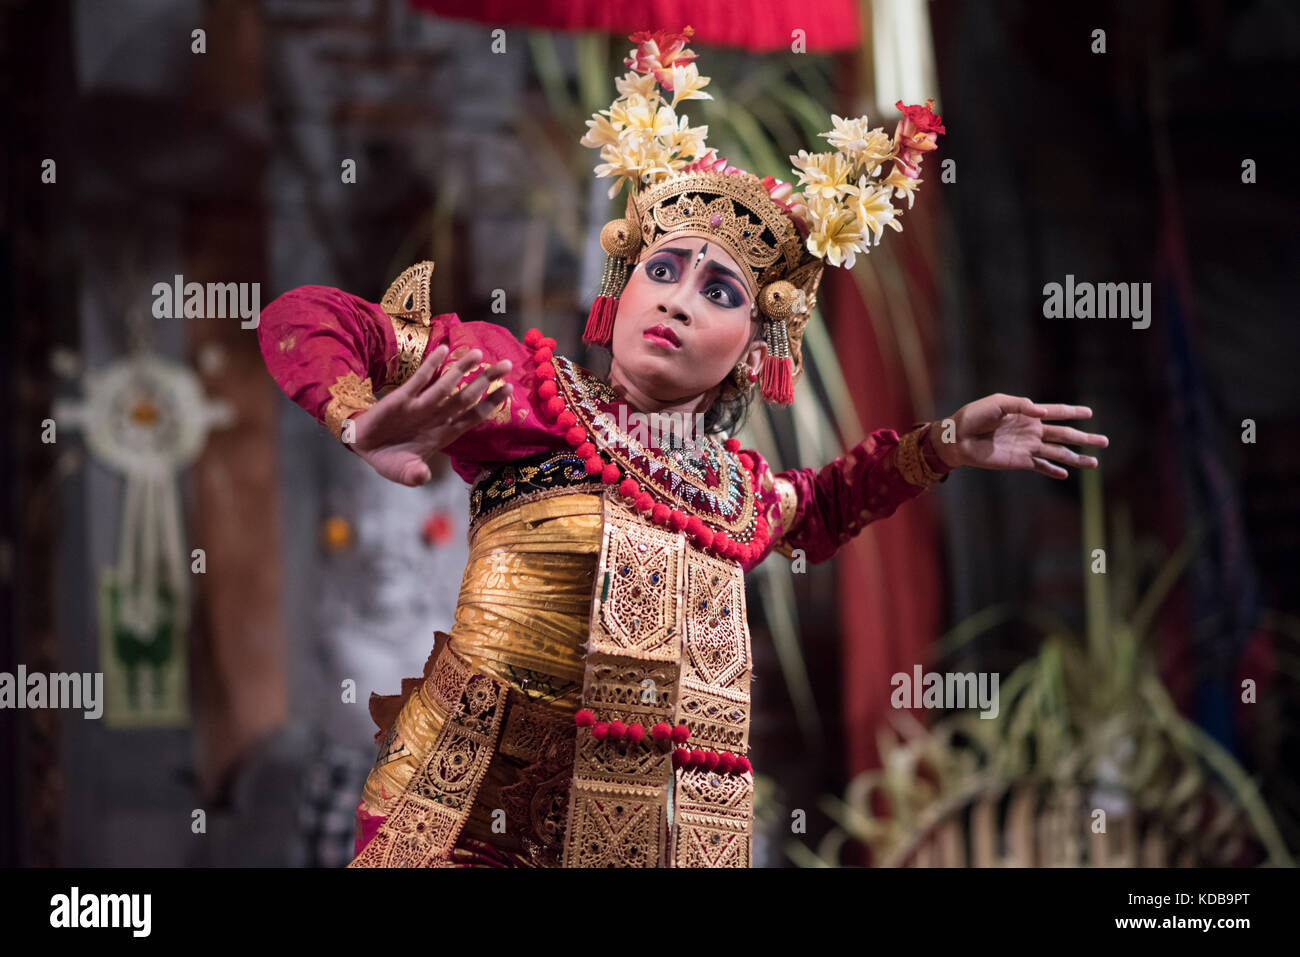 Balinais legong dancer performing dans un théâtre à Ubud, Bali, Indonésie. Banque D'Images